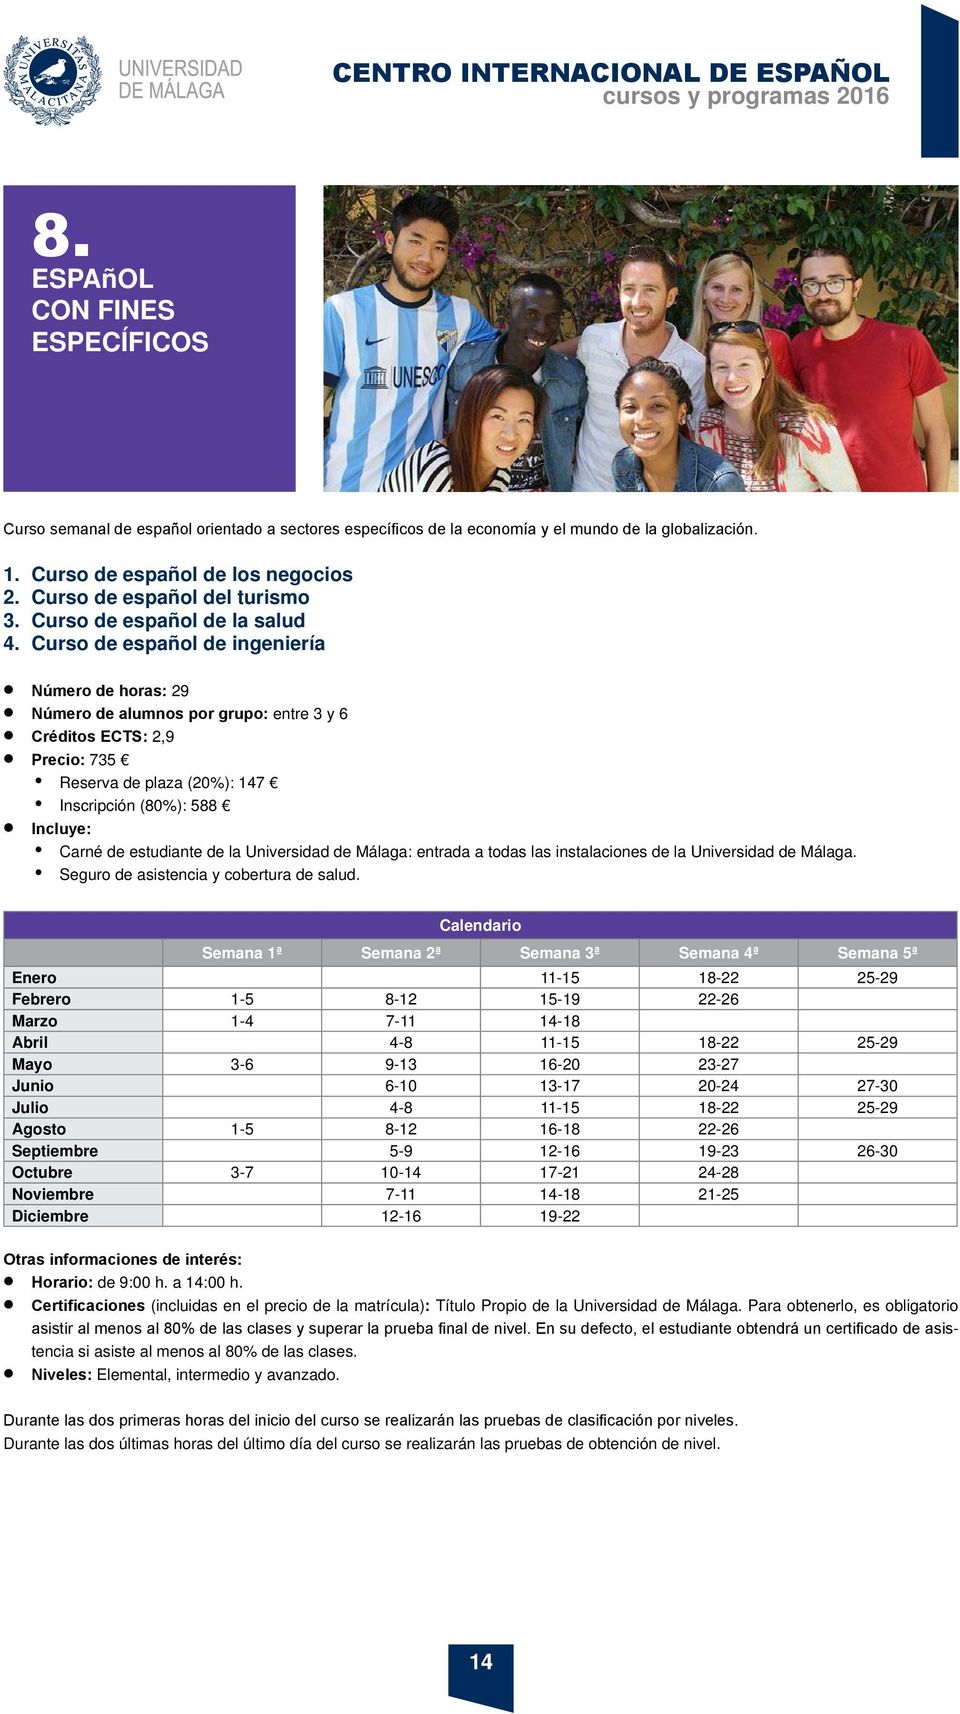 Curso de español de ingeniería Número de horas: 29 Número de alumnos por grupo: entre 3 y 6 Créditos ECTS: 2,9 Precio: 735 Reserva de plaza (20%): 147 Inscripción (80%): 588 Incluye: Carné de